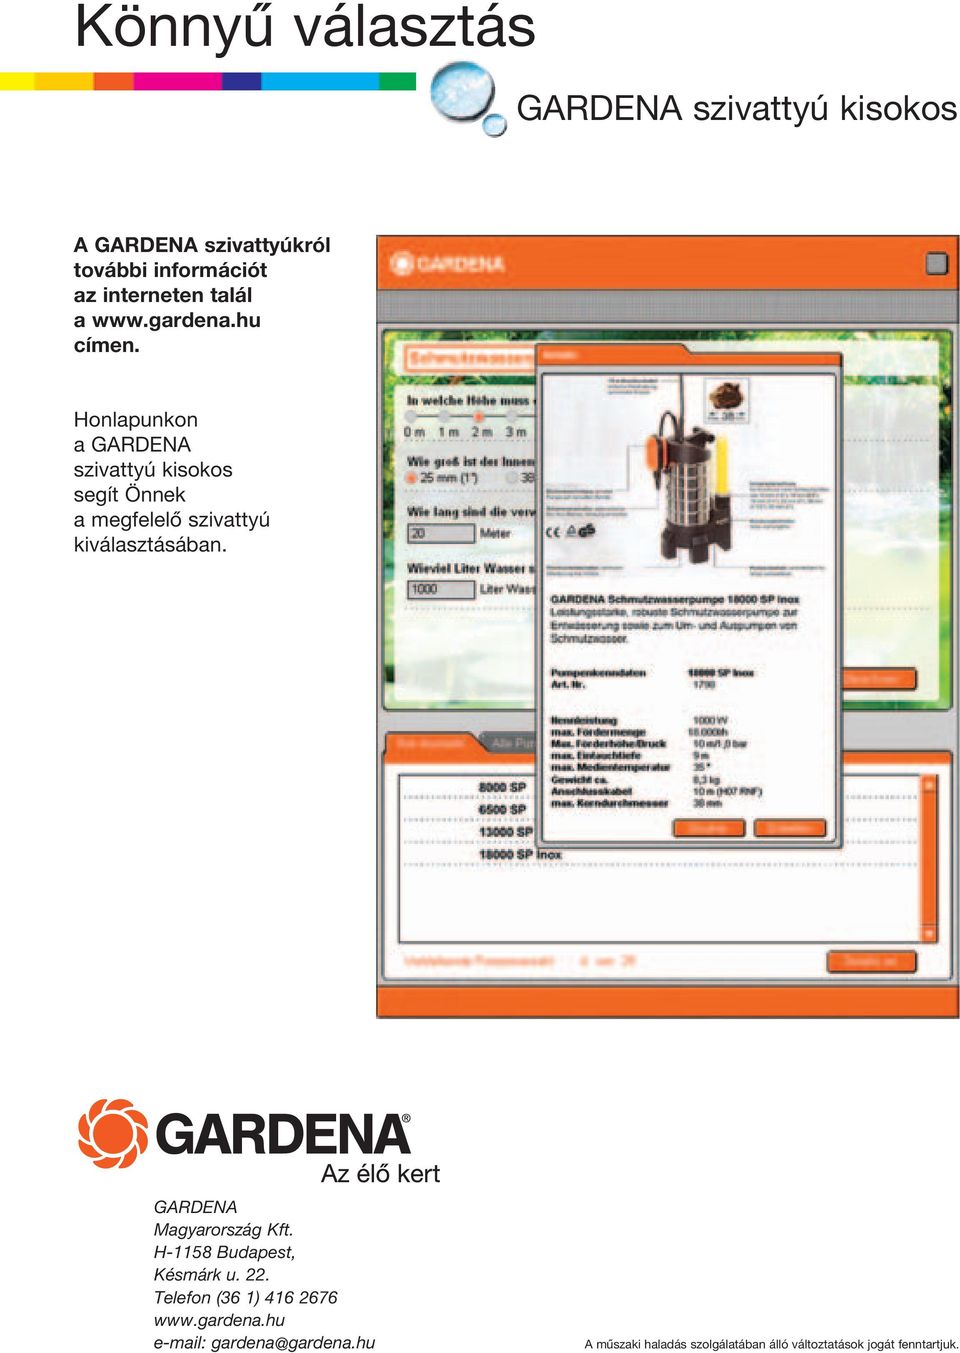 Honlapunkon a GARDENA szivattyú kisokos segít Önnek a megfelelô szivattyú kiválasztásában.